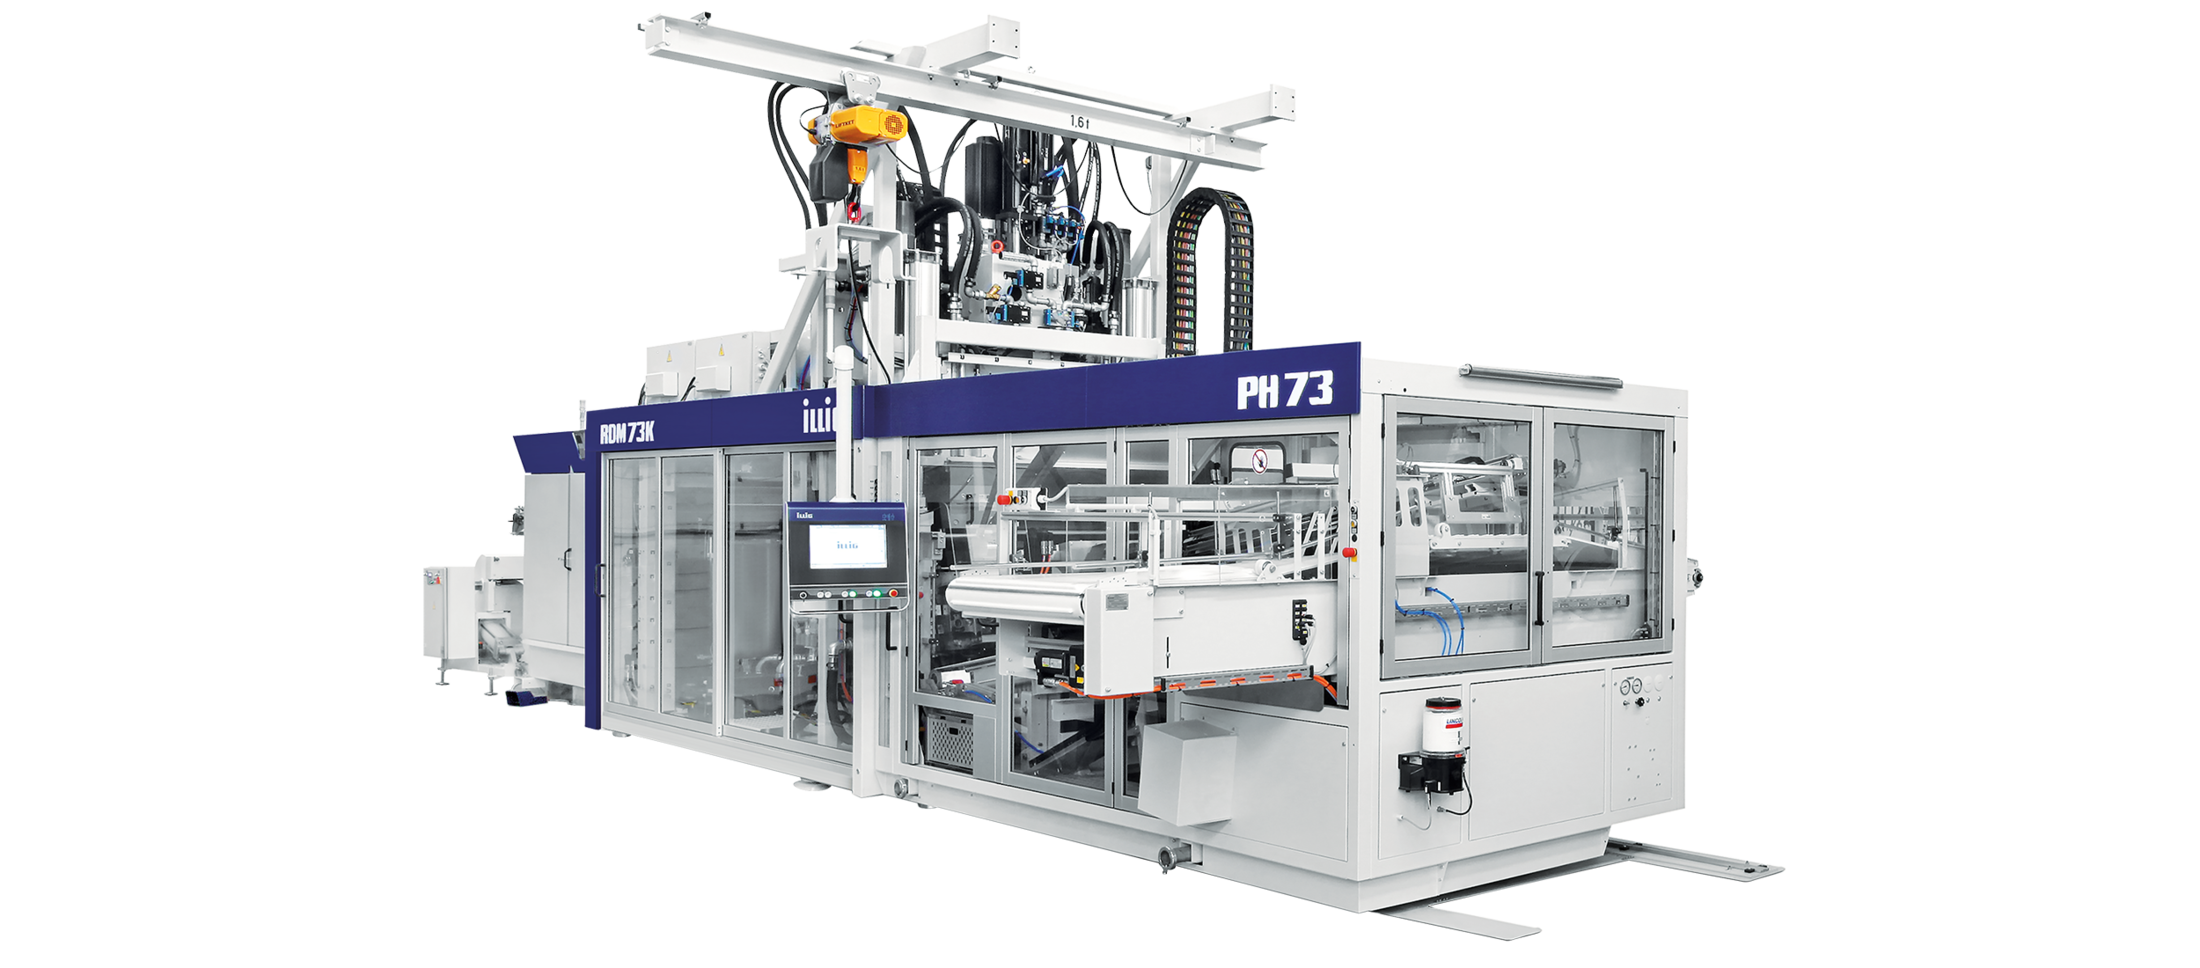 ILLIG IC-RDM 73K automatic roll-fed machine for forming/punching operation | © ILLIG Maschinenbau